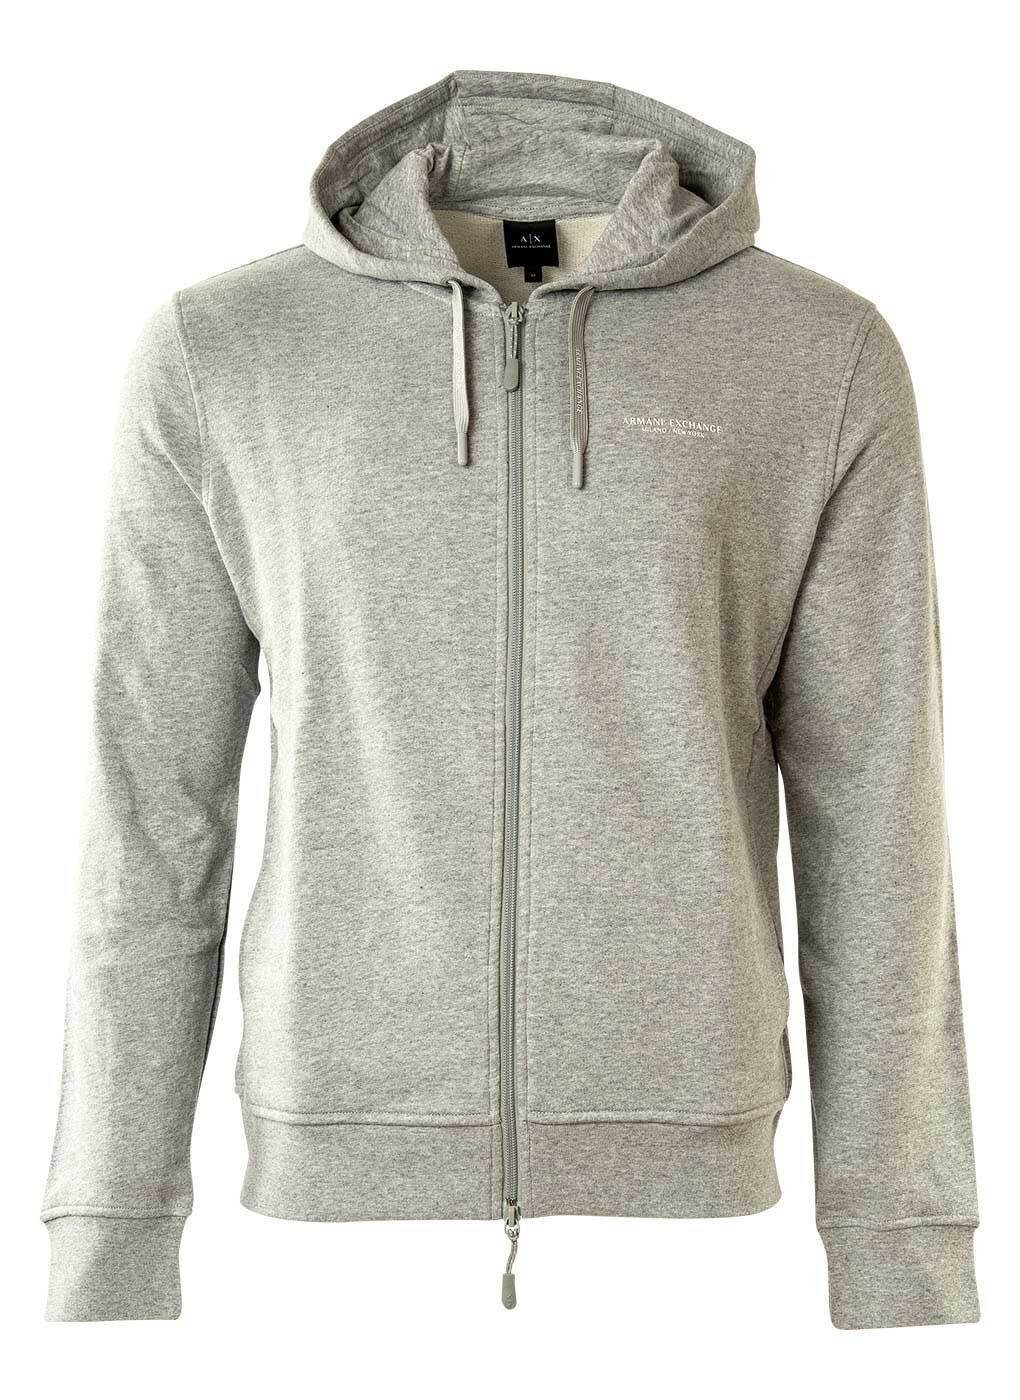 ARMANI EXCHANGE Sweatshirt Herren Sweatshirt - Sweatshirtjacke, Logo Grau